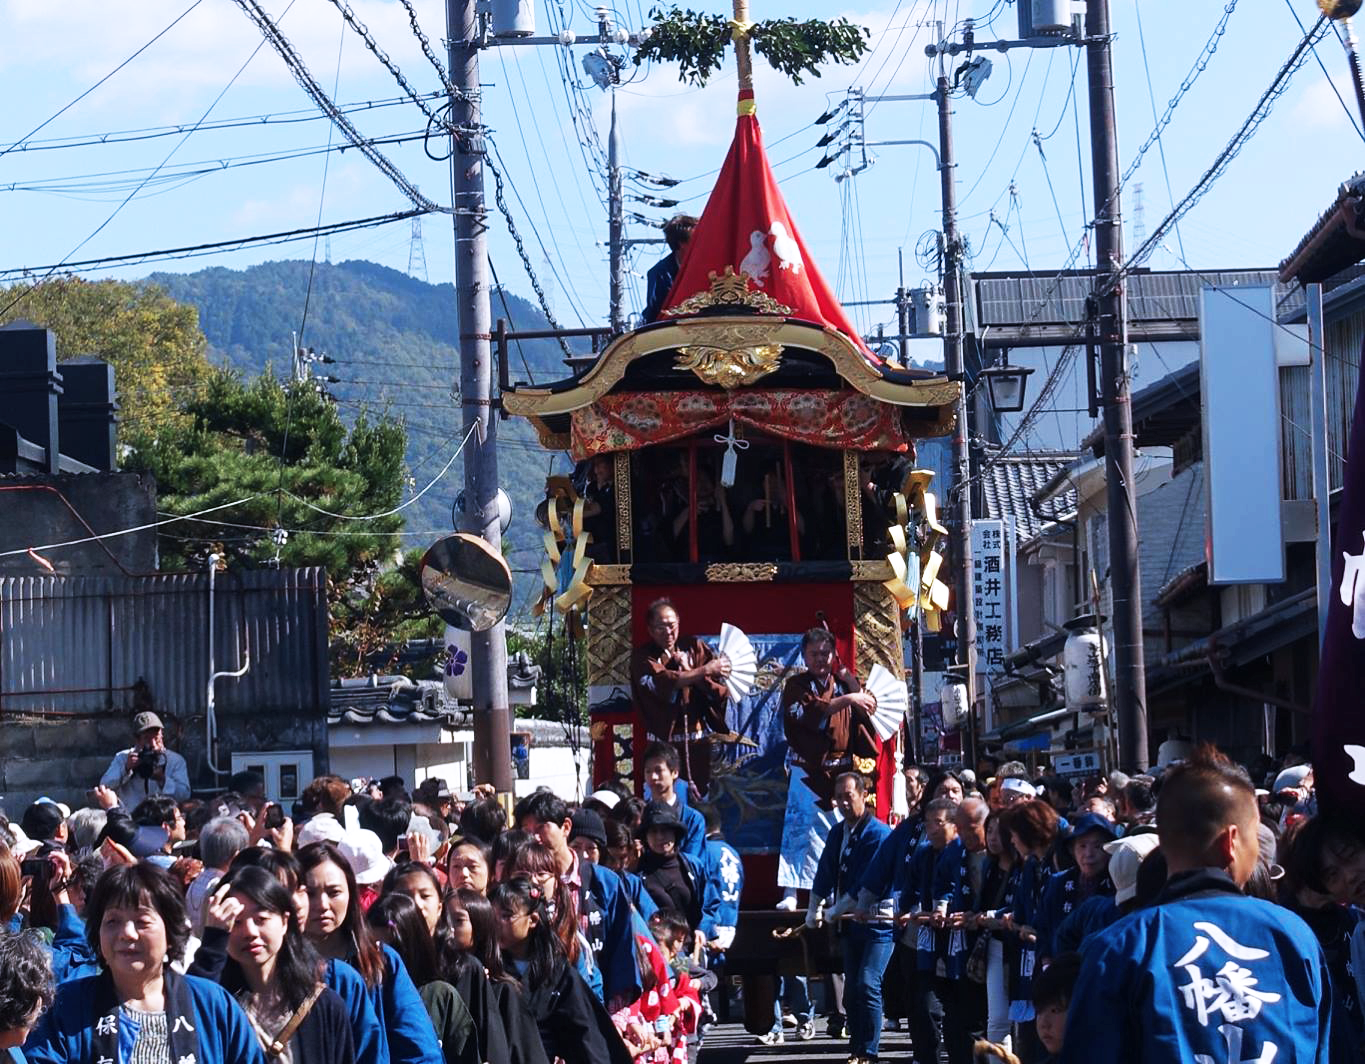 10月 看花車去了 龜岡祭山鉾行事令京都踏入熱鬧而忙碌的秋季 是日日本 Medium